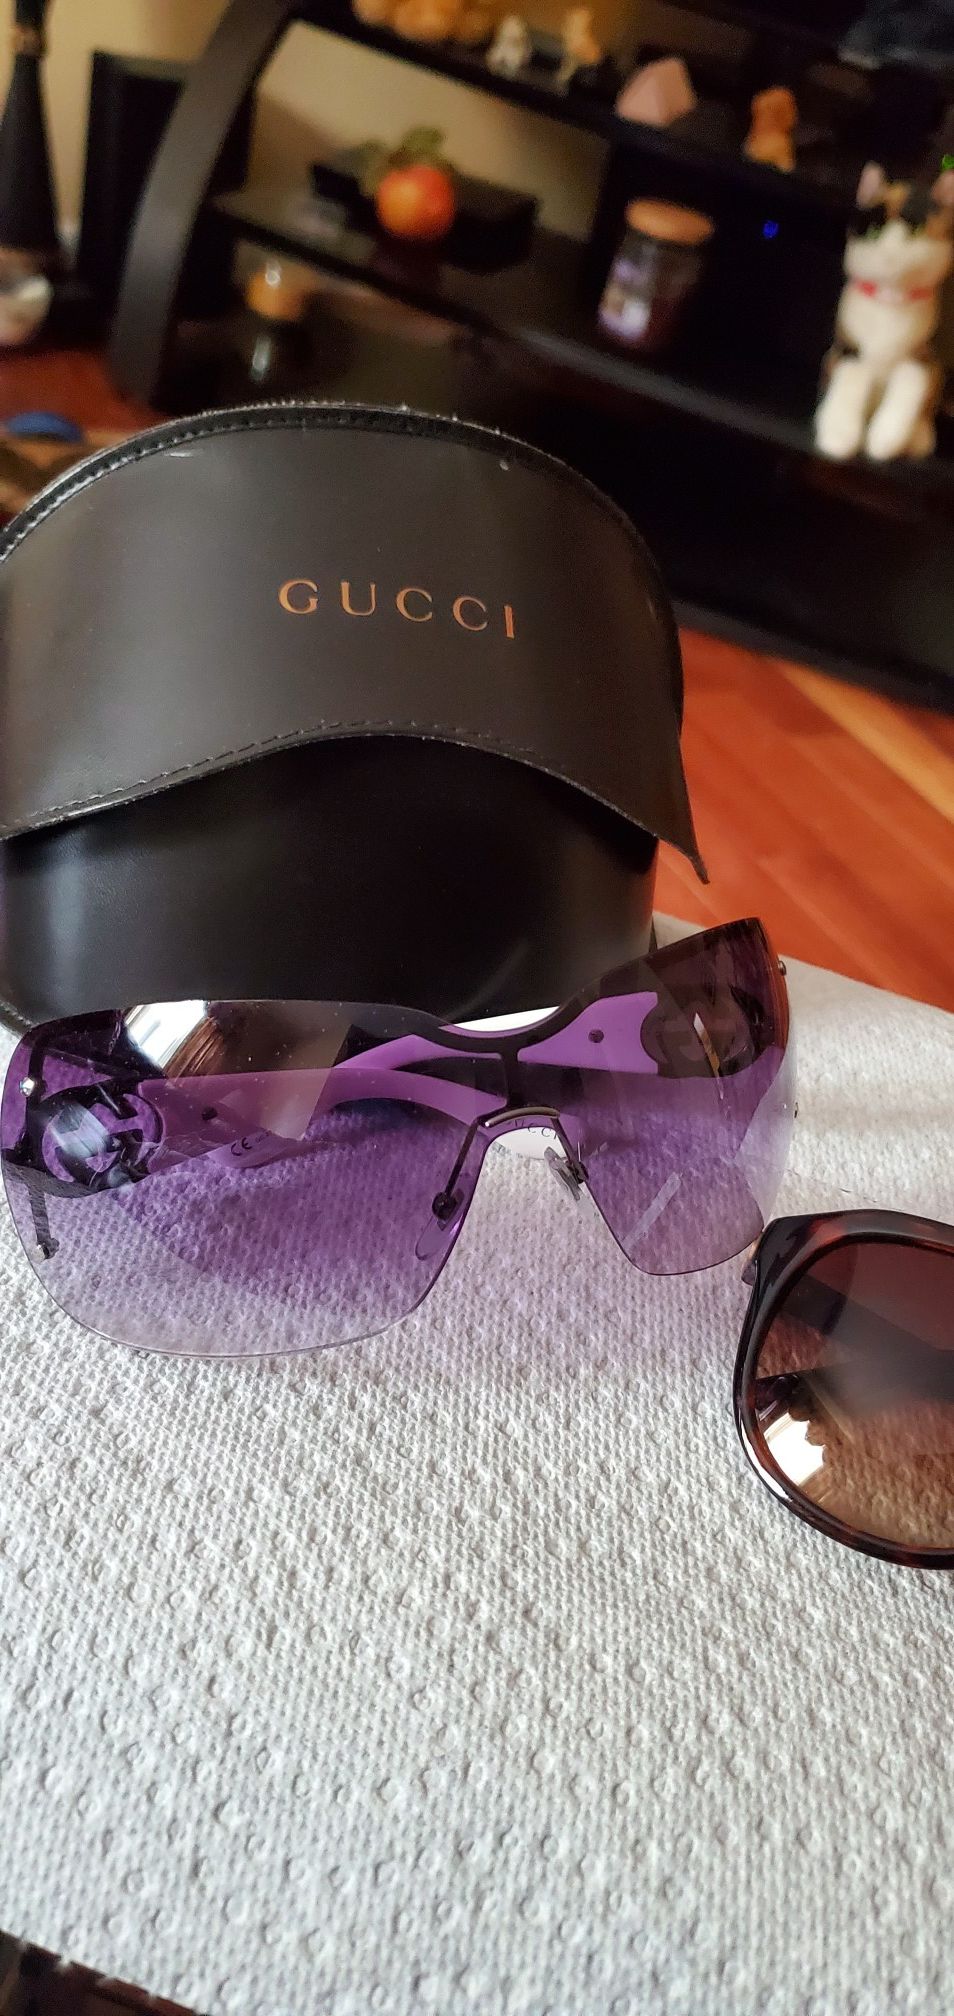 Authentic Gucci glasses